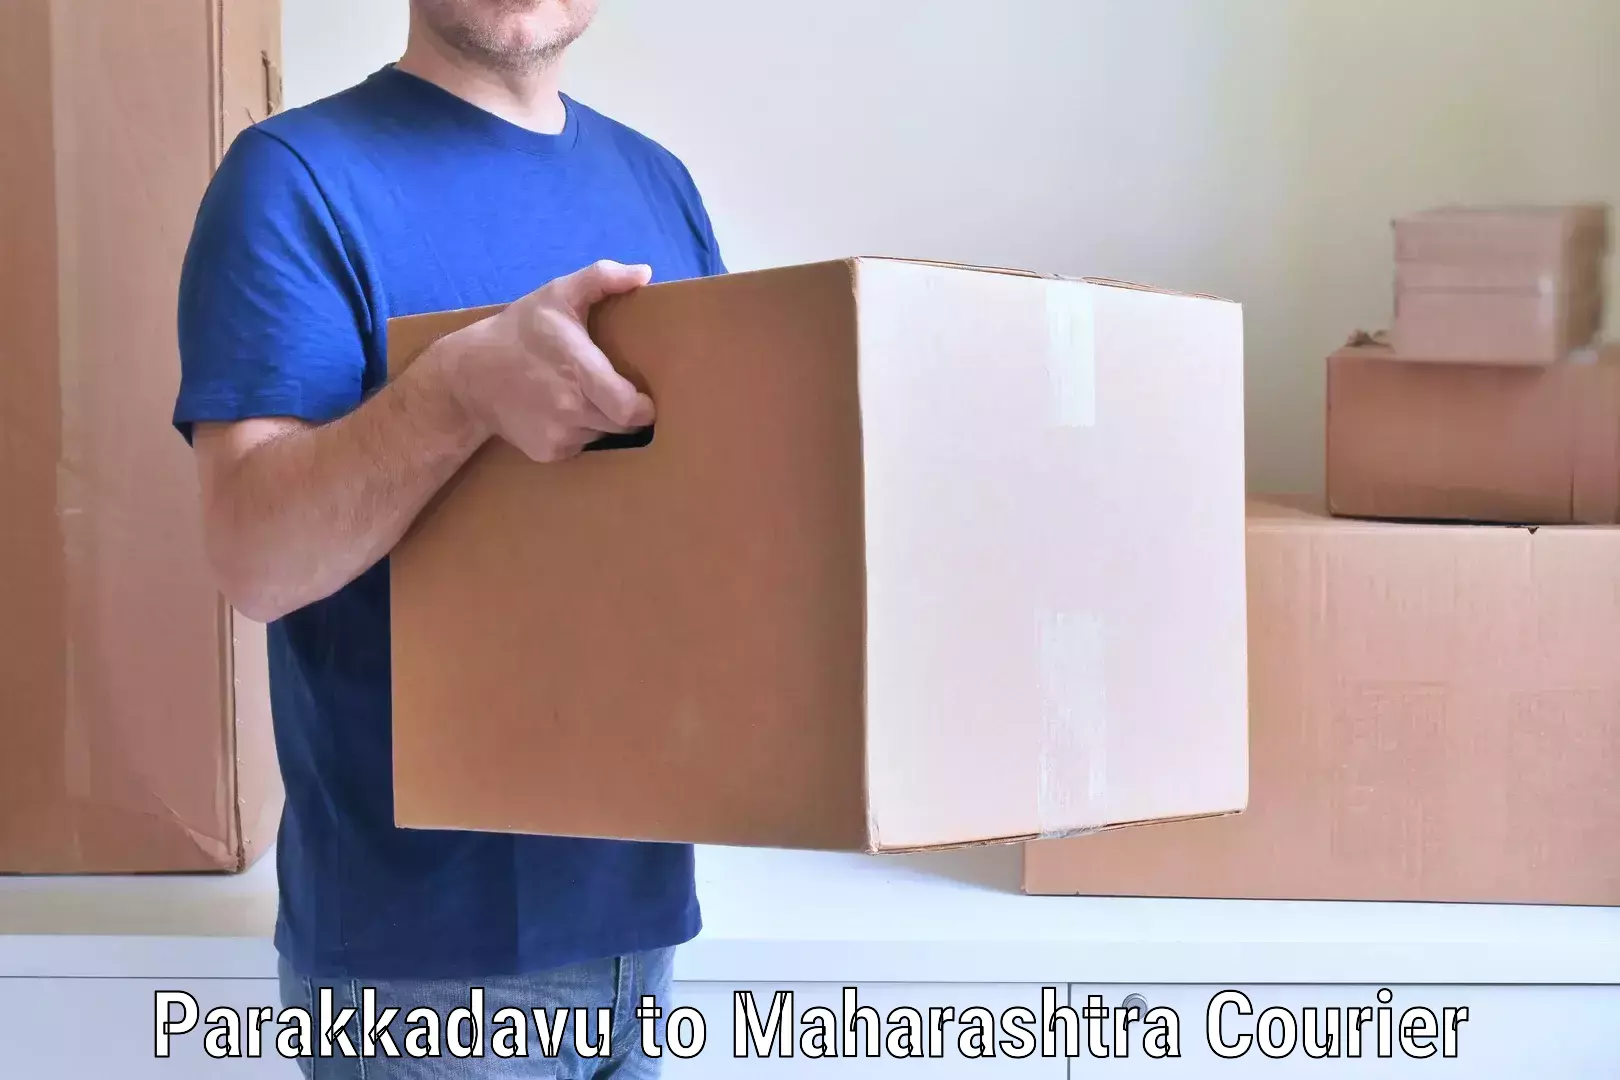 Professional movers Parakkadavu to Mumbai Port